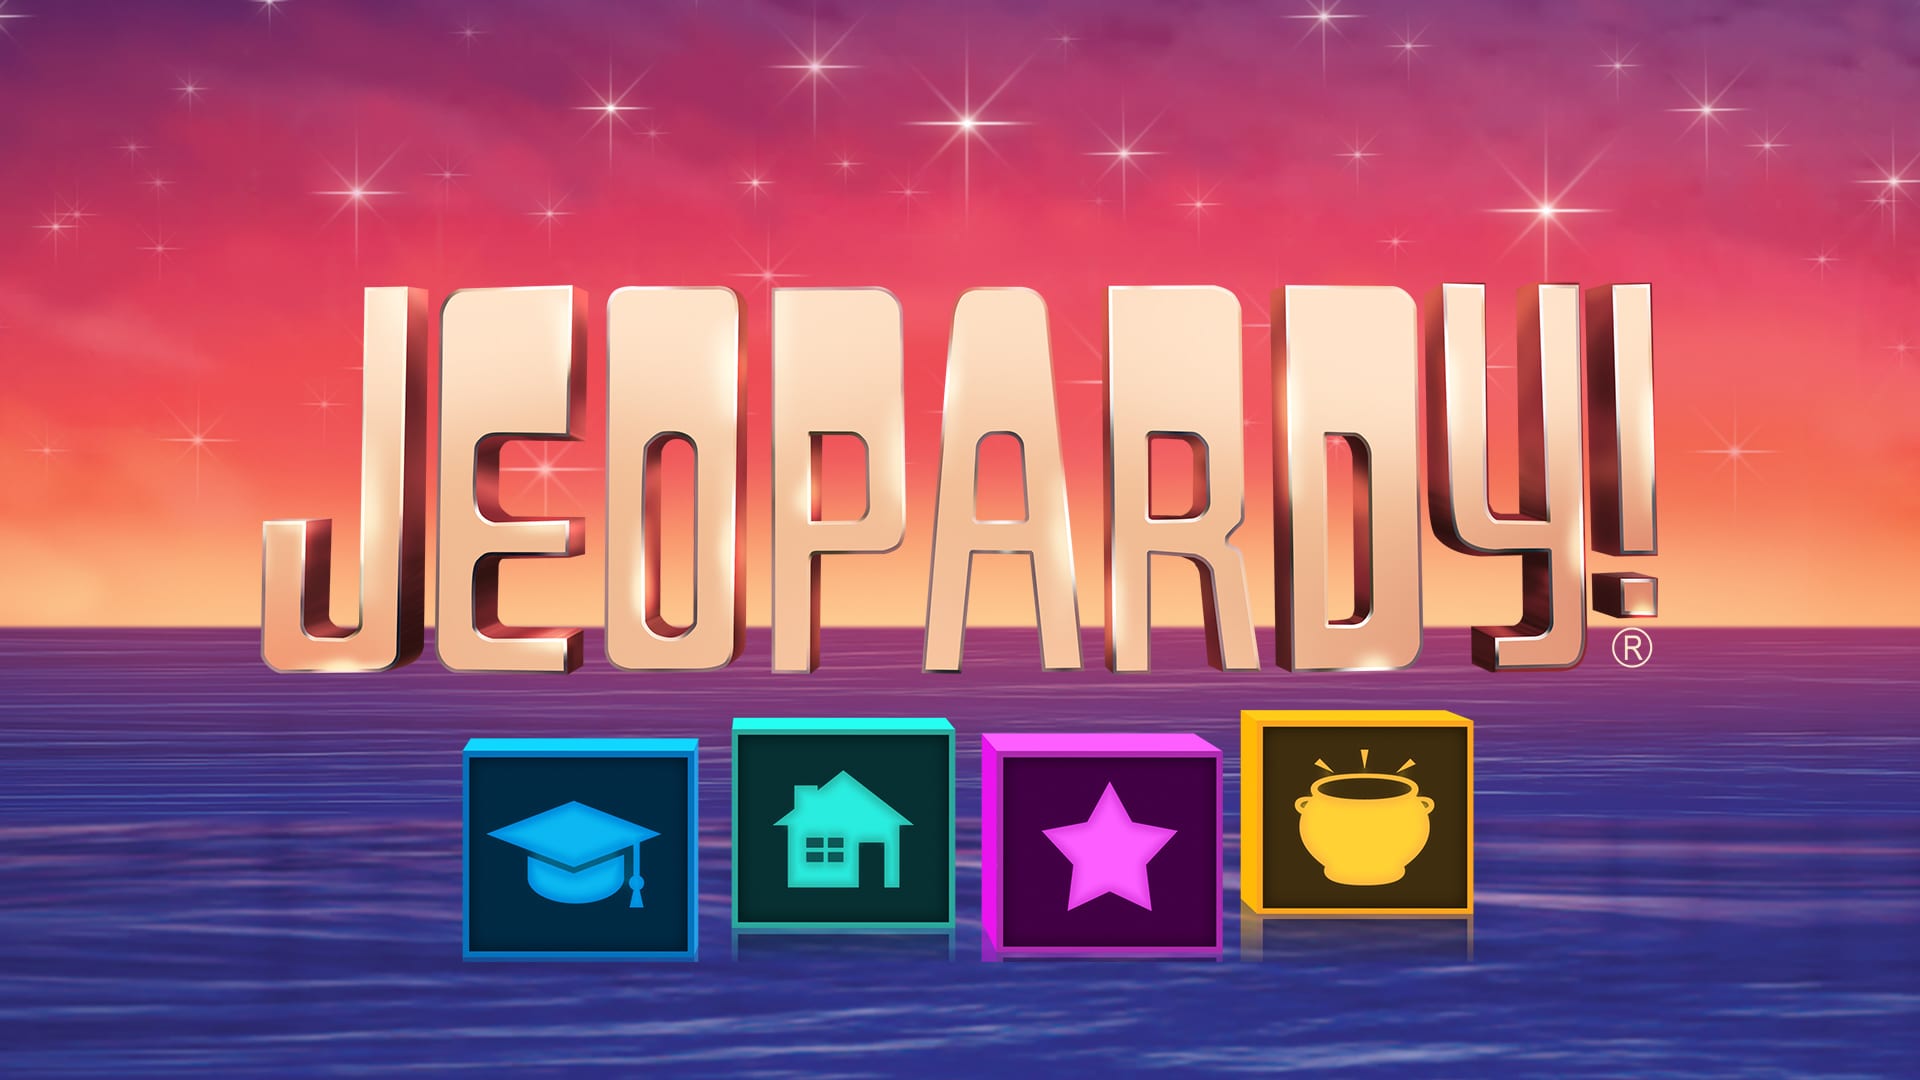 Jeopardy!®